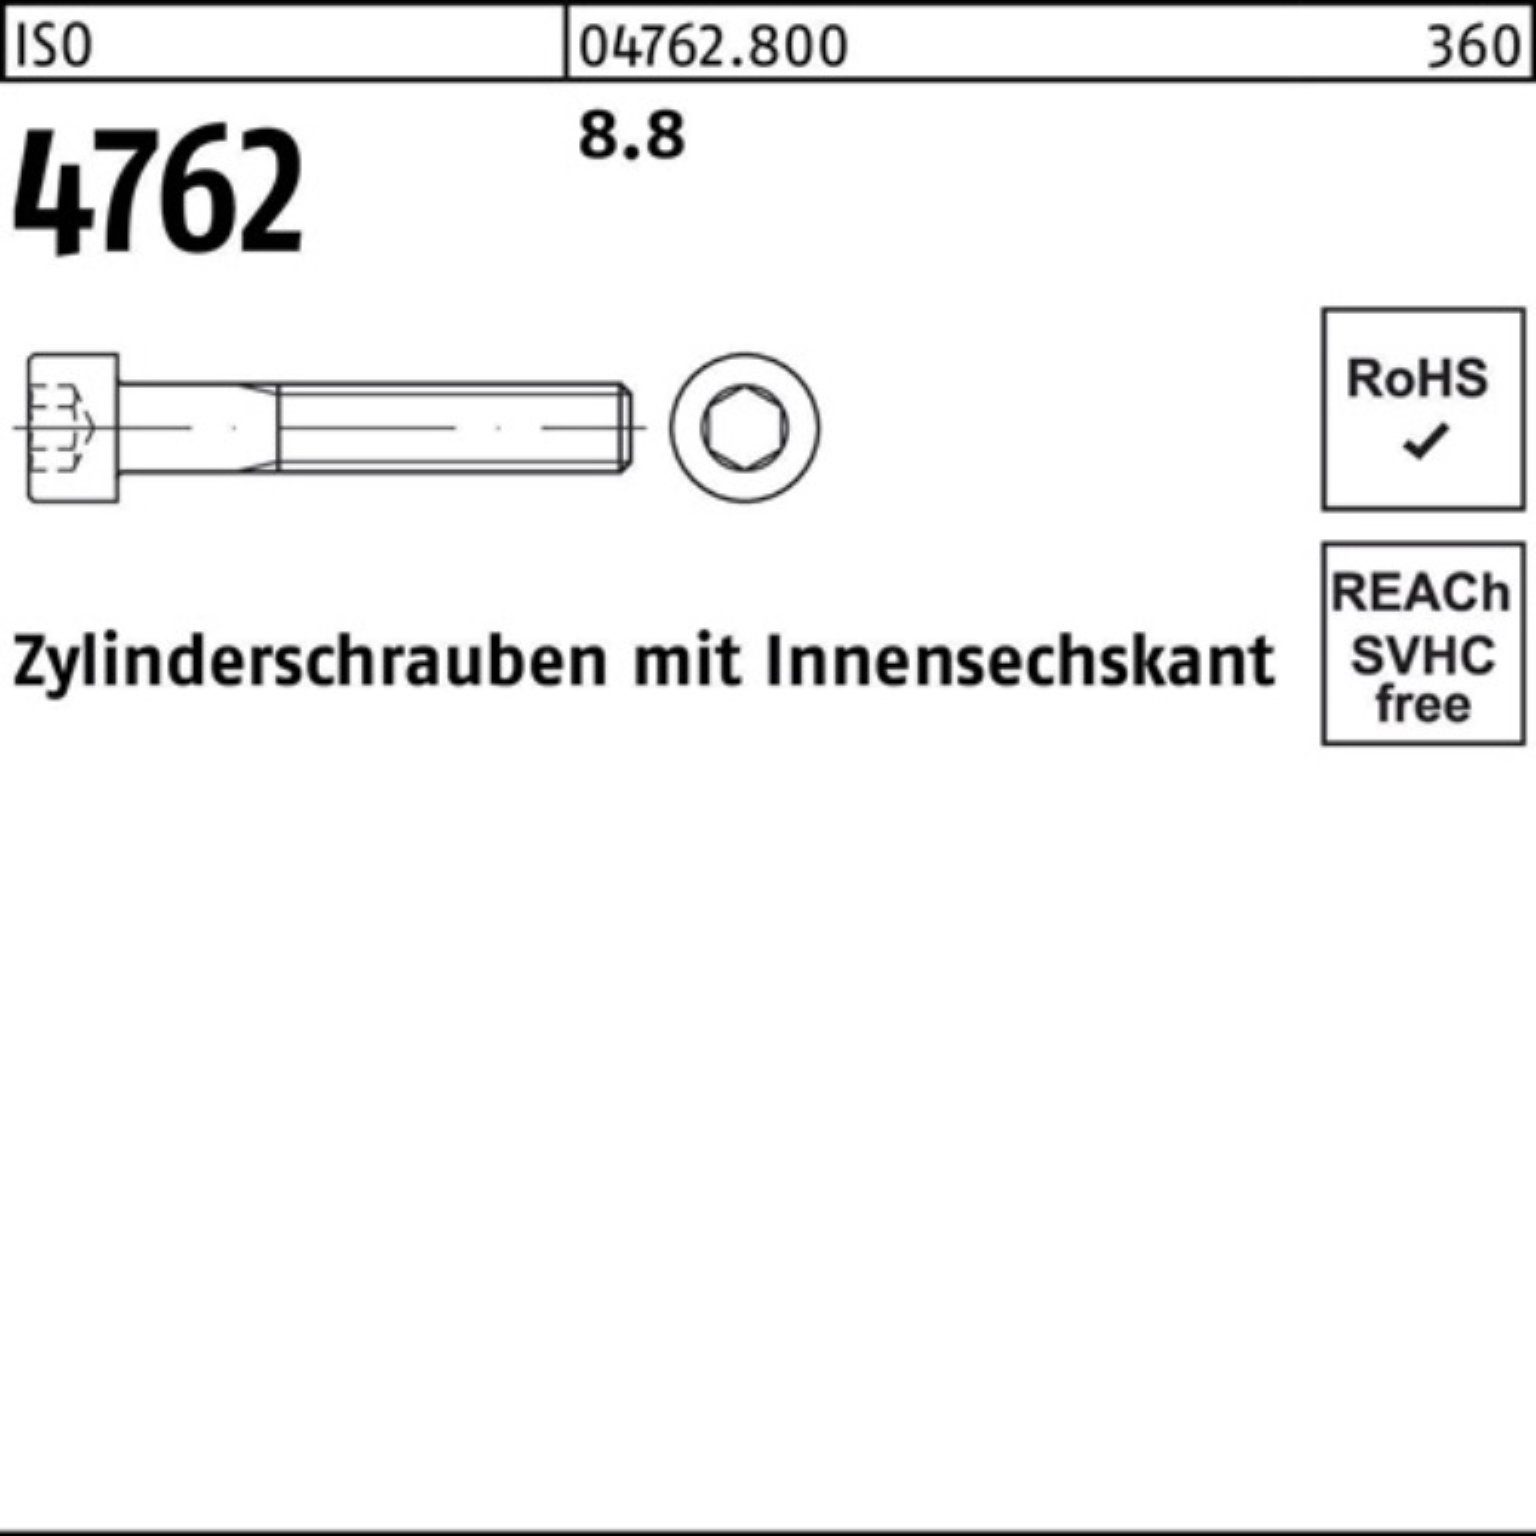 8.8 M20x Reyher Innen-6kt 100er Pack 110 4762 ISO Zylinderschraube Zylinderschraube Stück 25